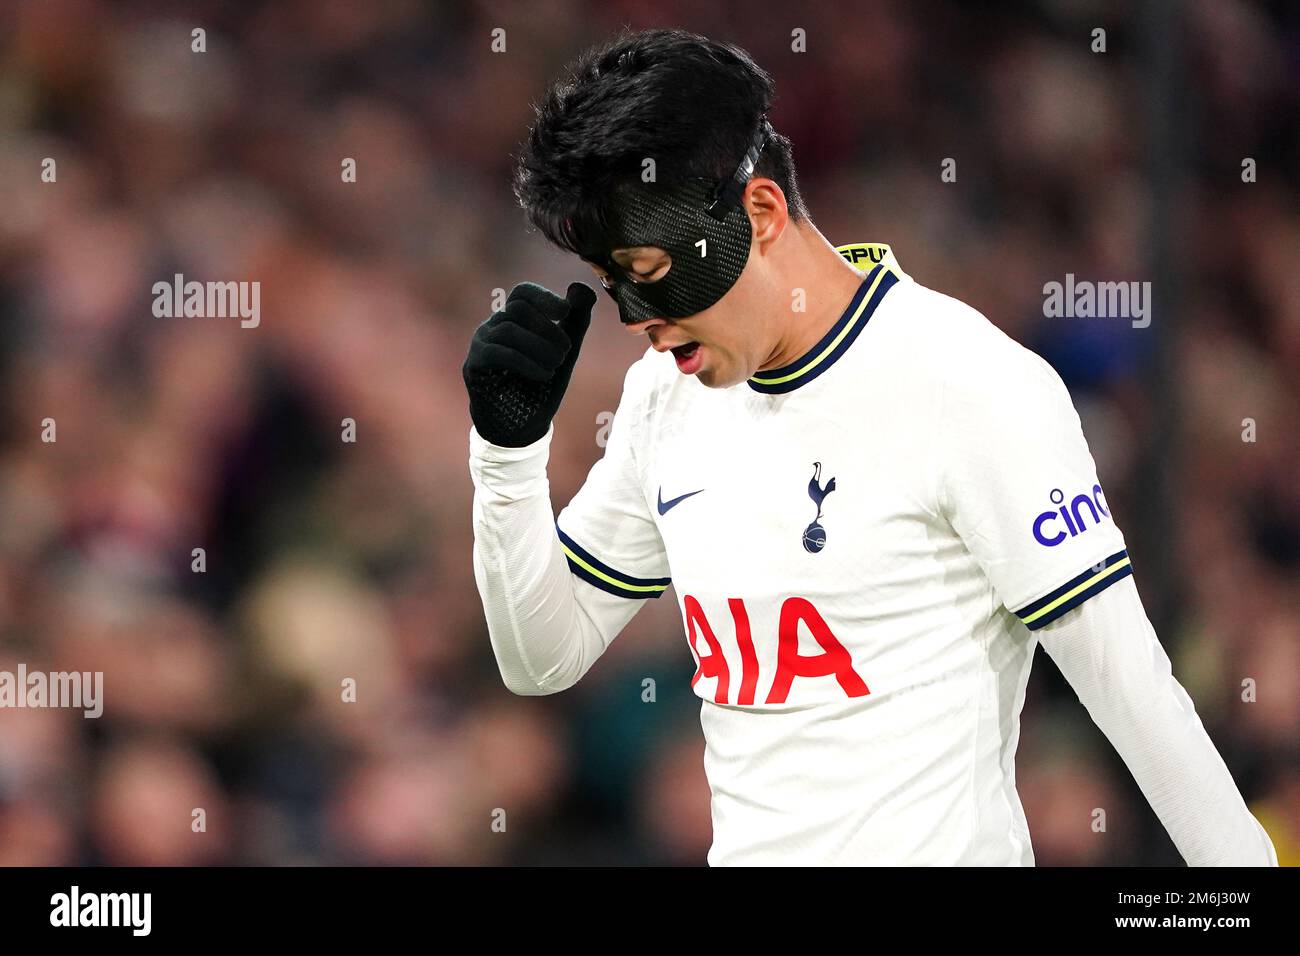 Tottenham Hotspur's Son Heung-min indossa una maschera protettiva durante  la partita della Premier League al Selhurst Park, Londra. Data immagine:  Mercoledì 4 gennaio 2023 Foto stock - Alamy